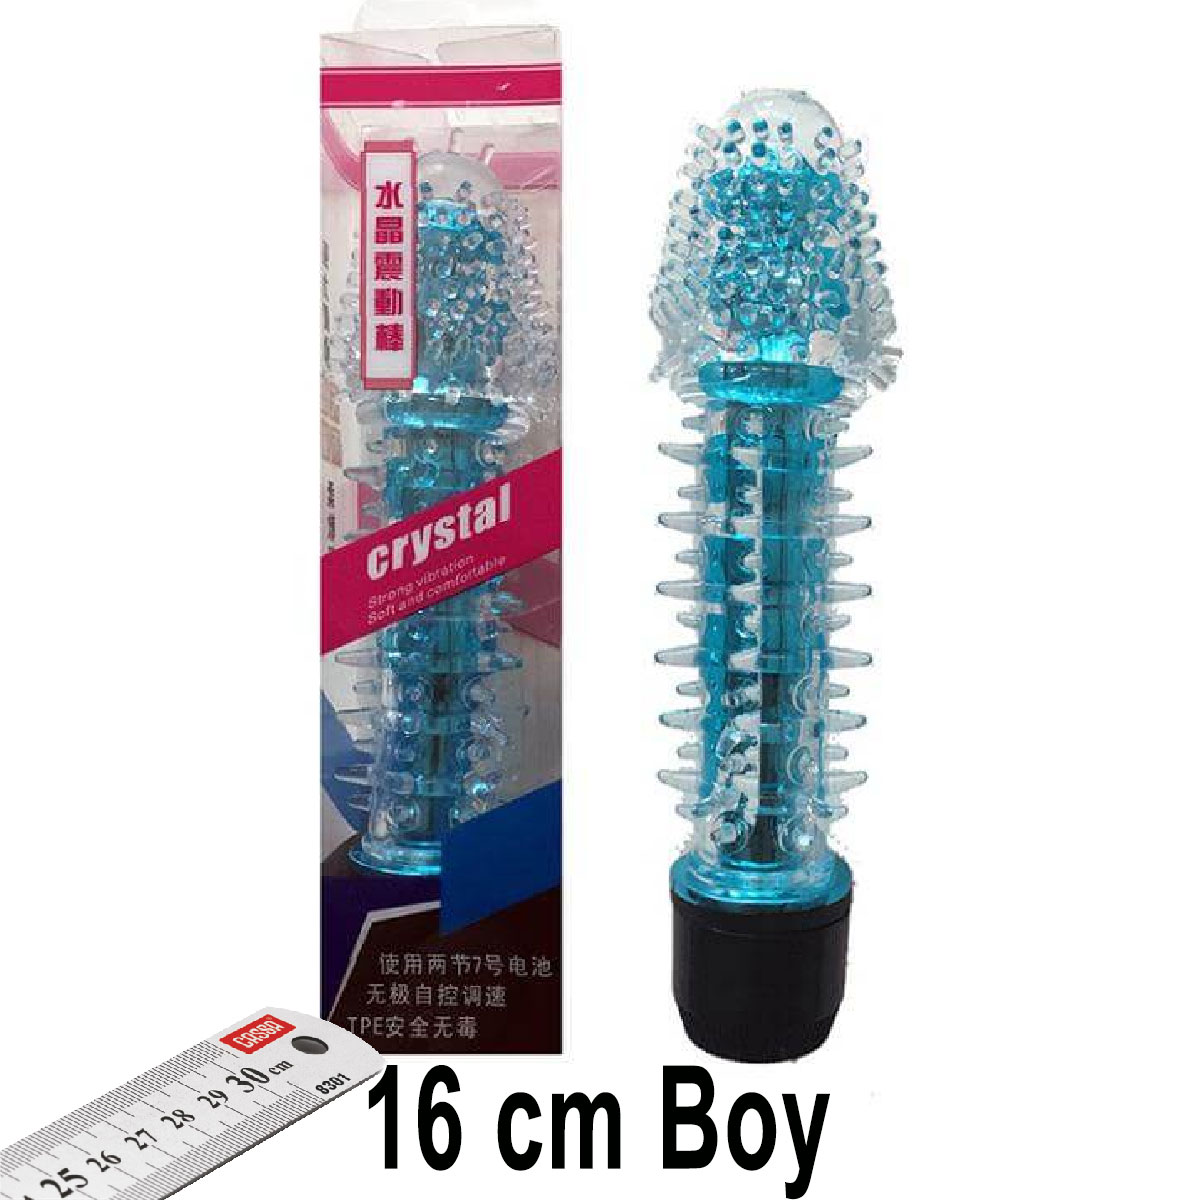 Crystal 16 cm Boy Mavi Vibratör ve Zevk Kılıfı Seti AL-Q029